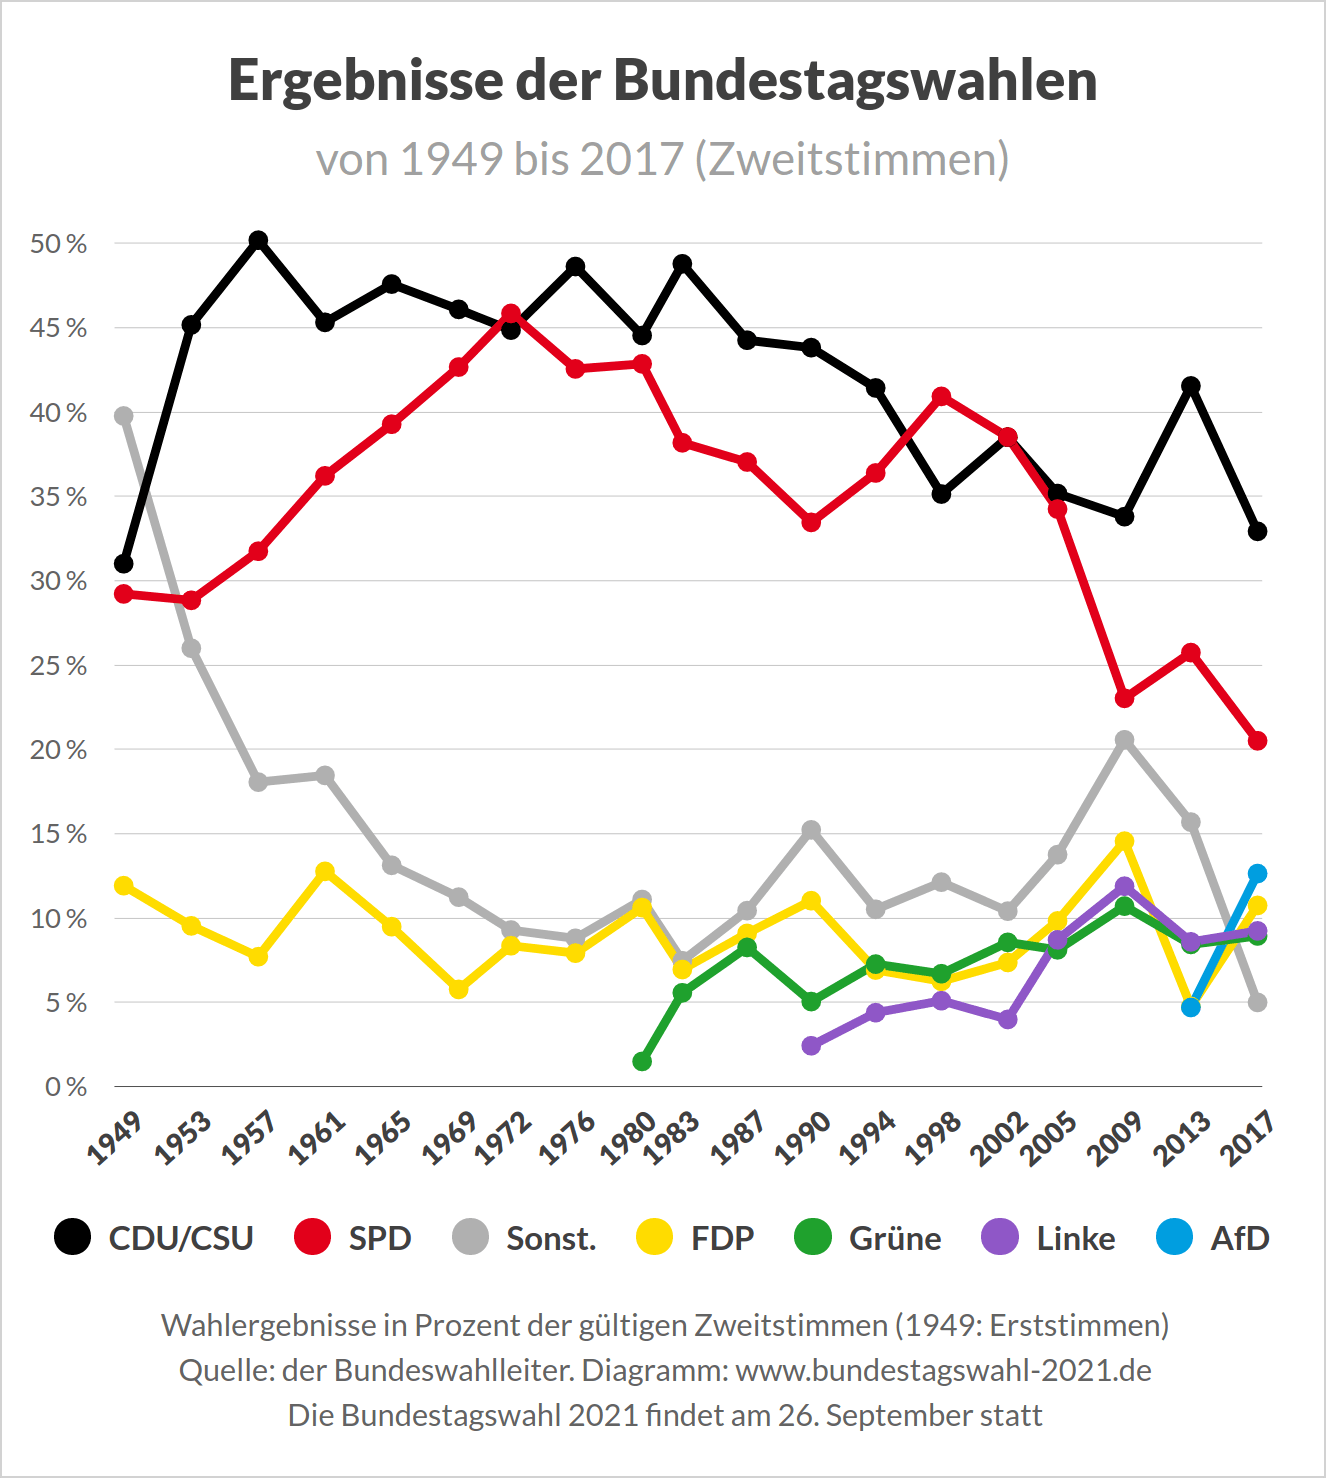 Ergebnisse der Bundestagswahlen in Deutschland (von 1949 bis 2017)